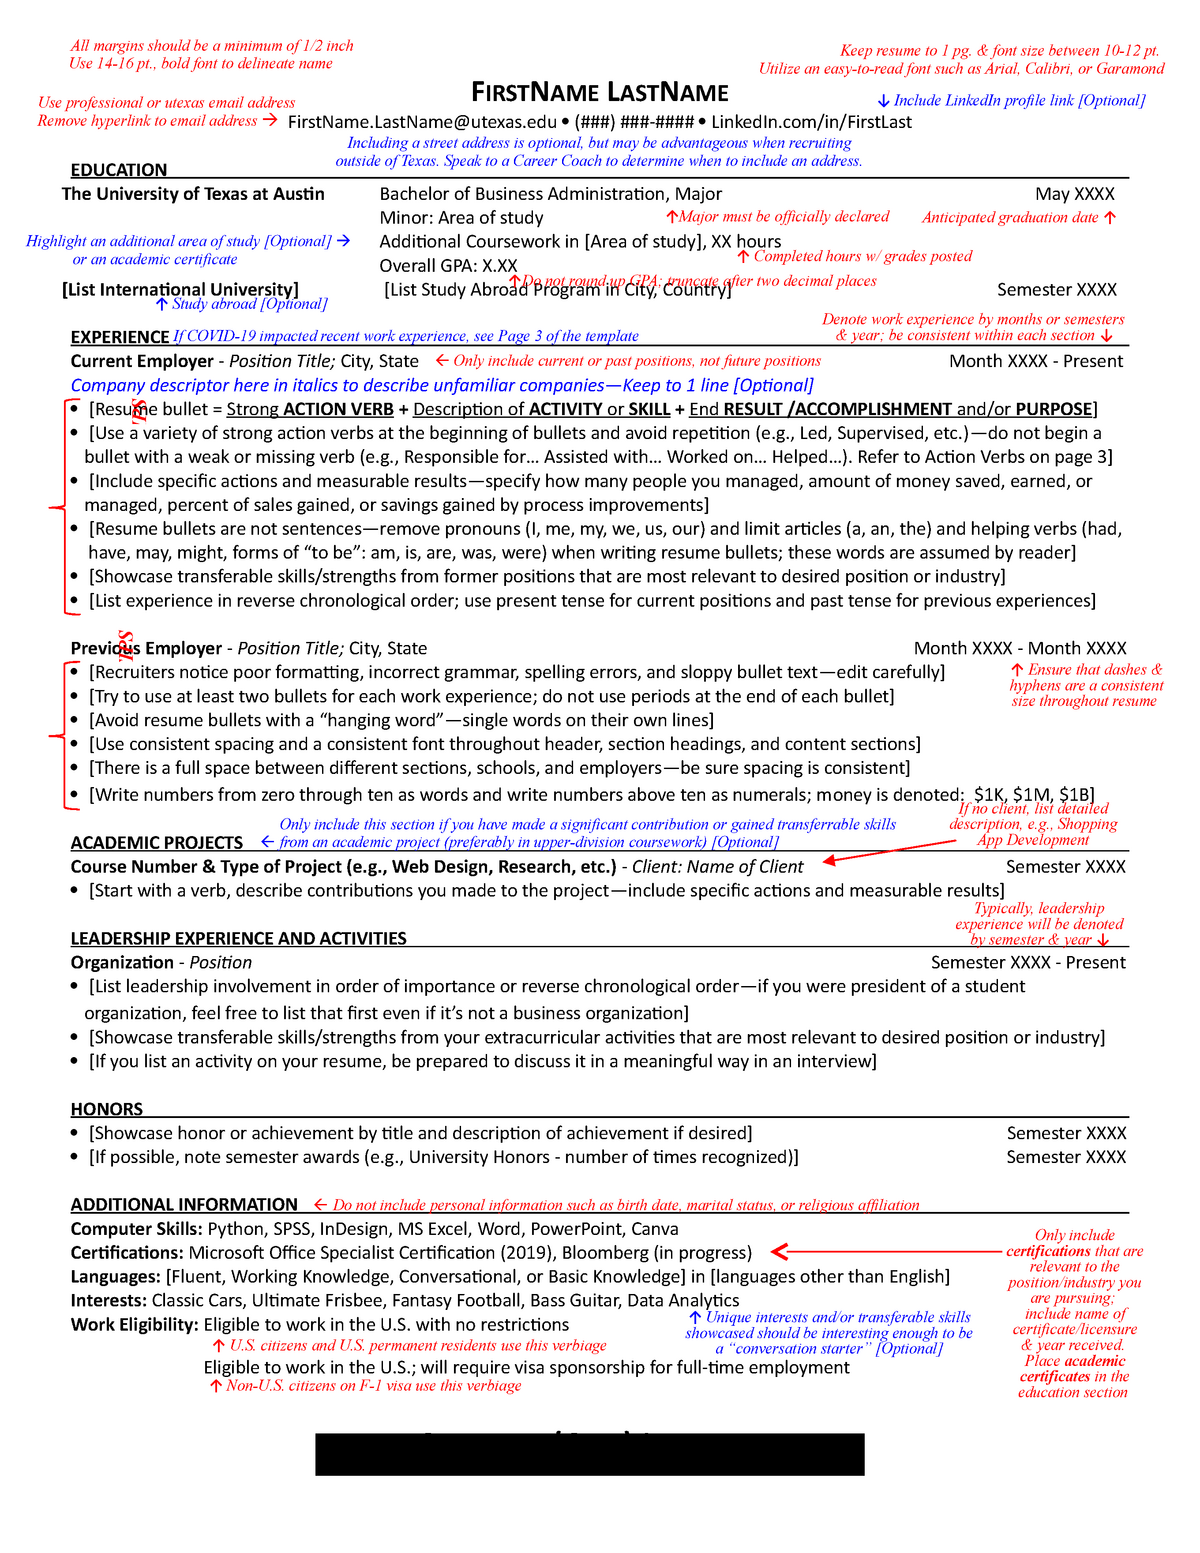 university of utah resume template